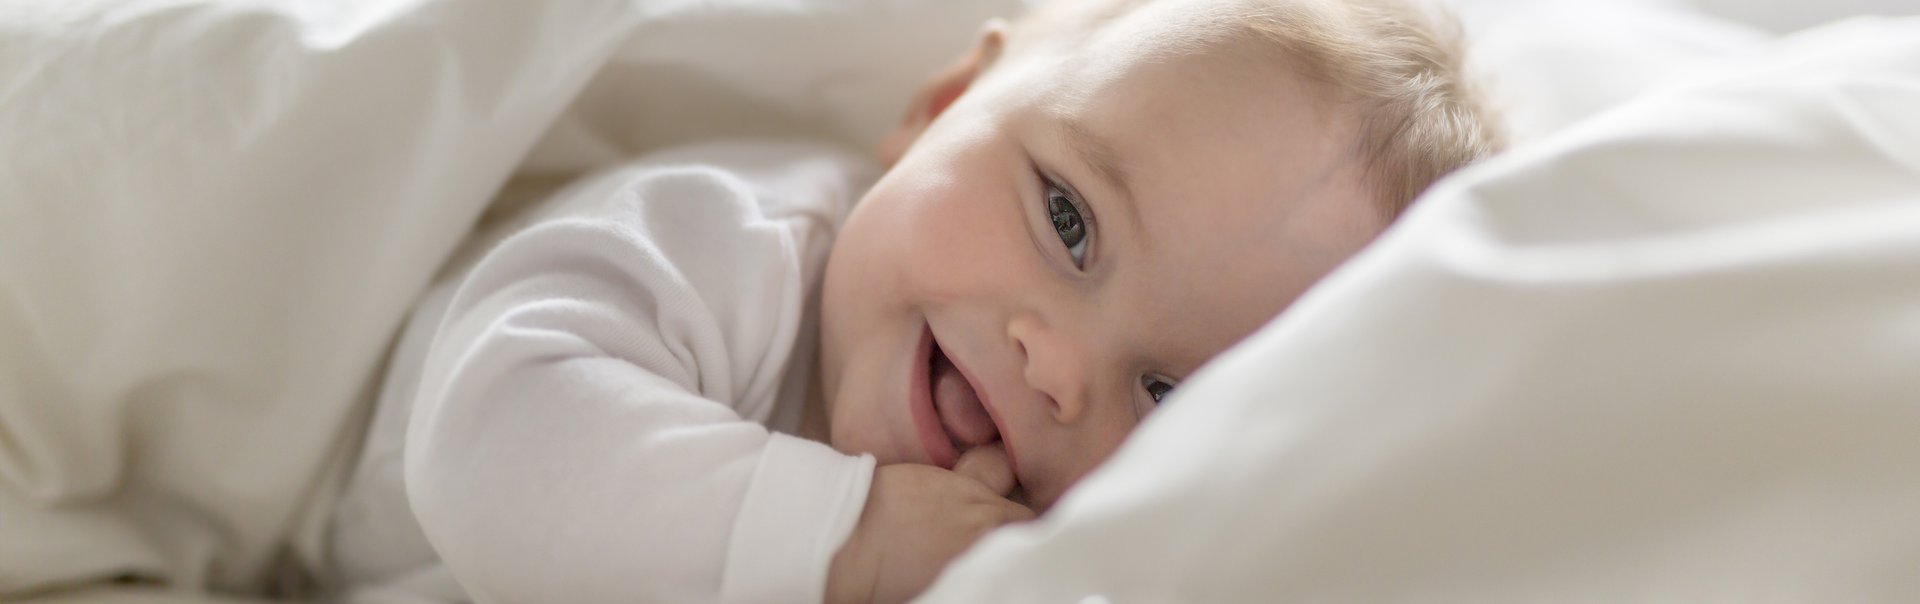 Ein fröhliches Baby liegt in einem Bett.